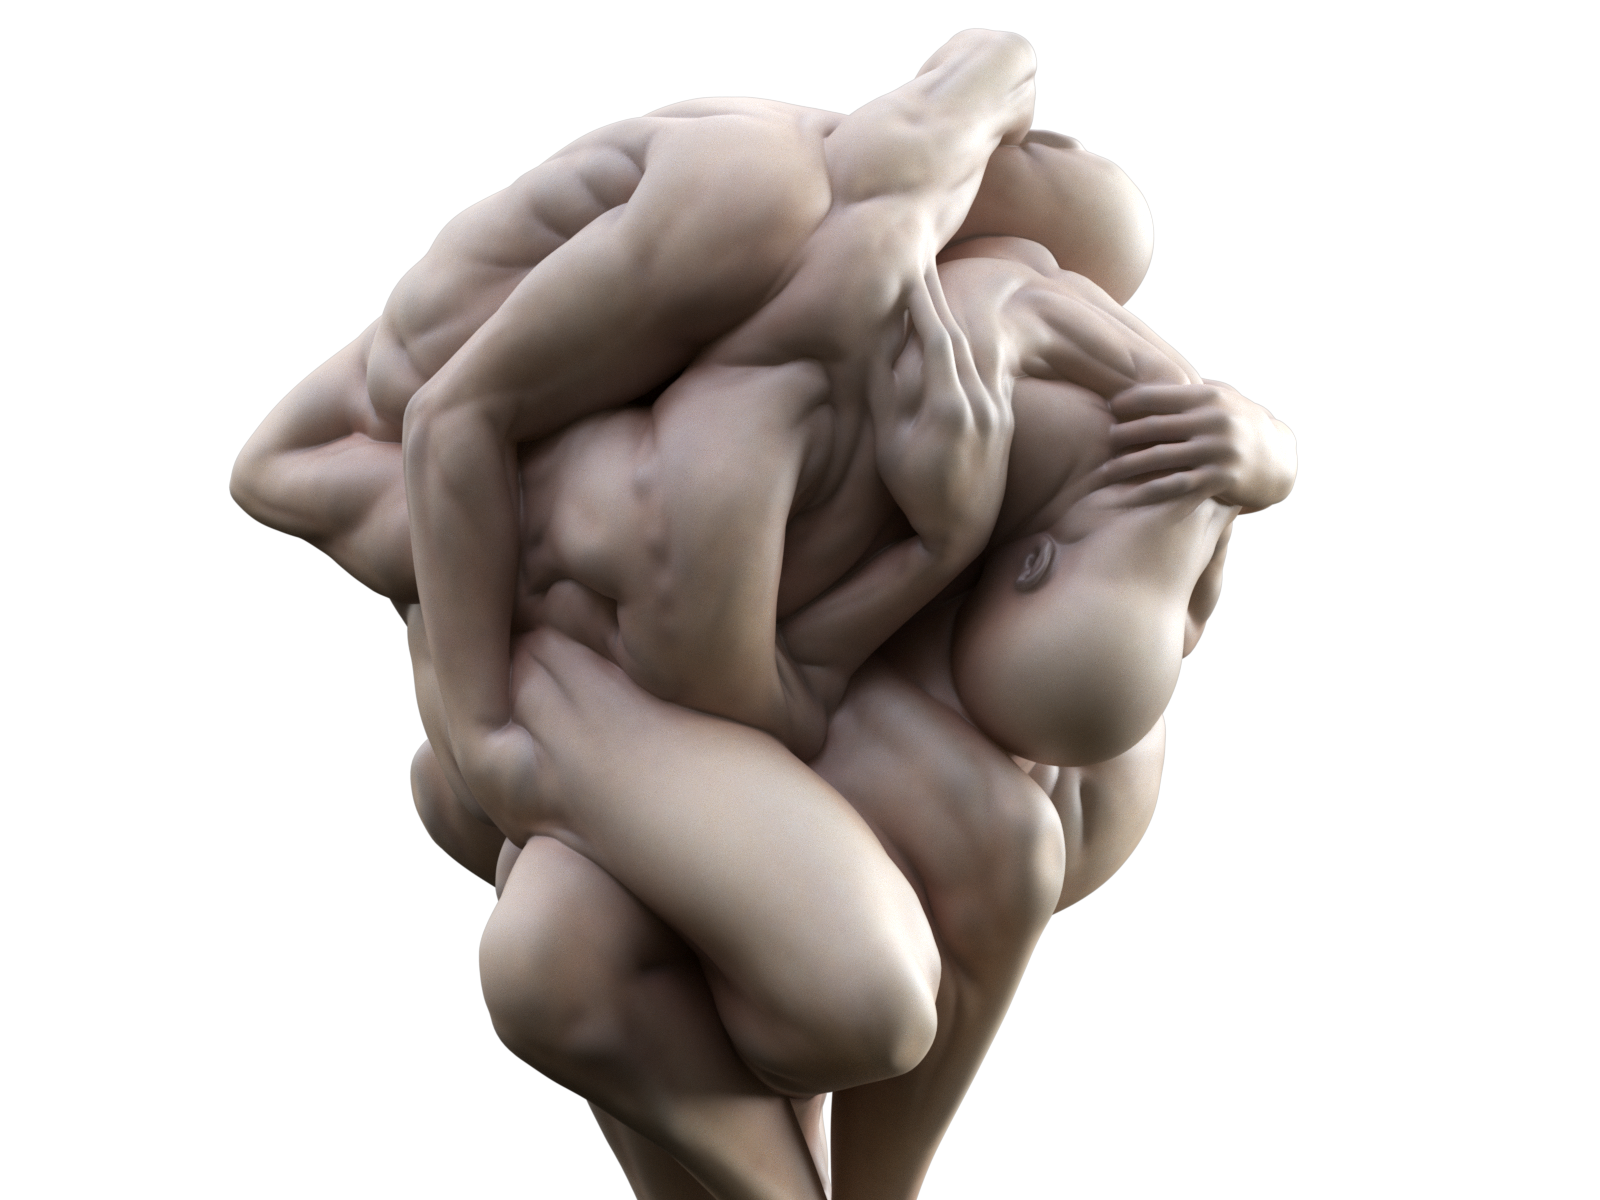 Weird anatomy statue